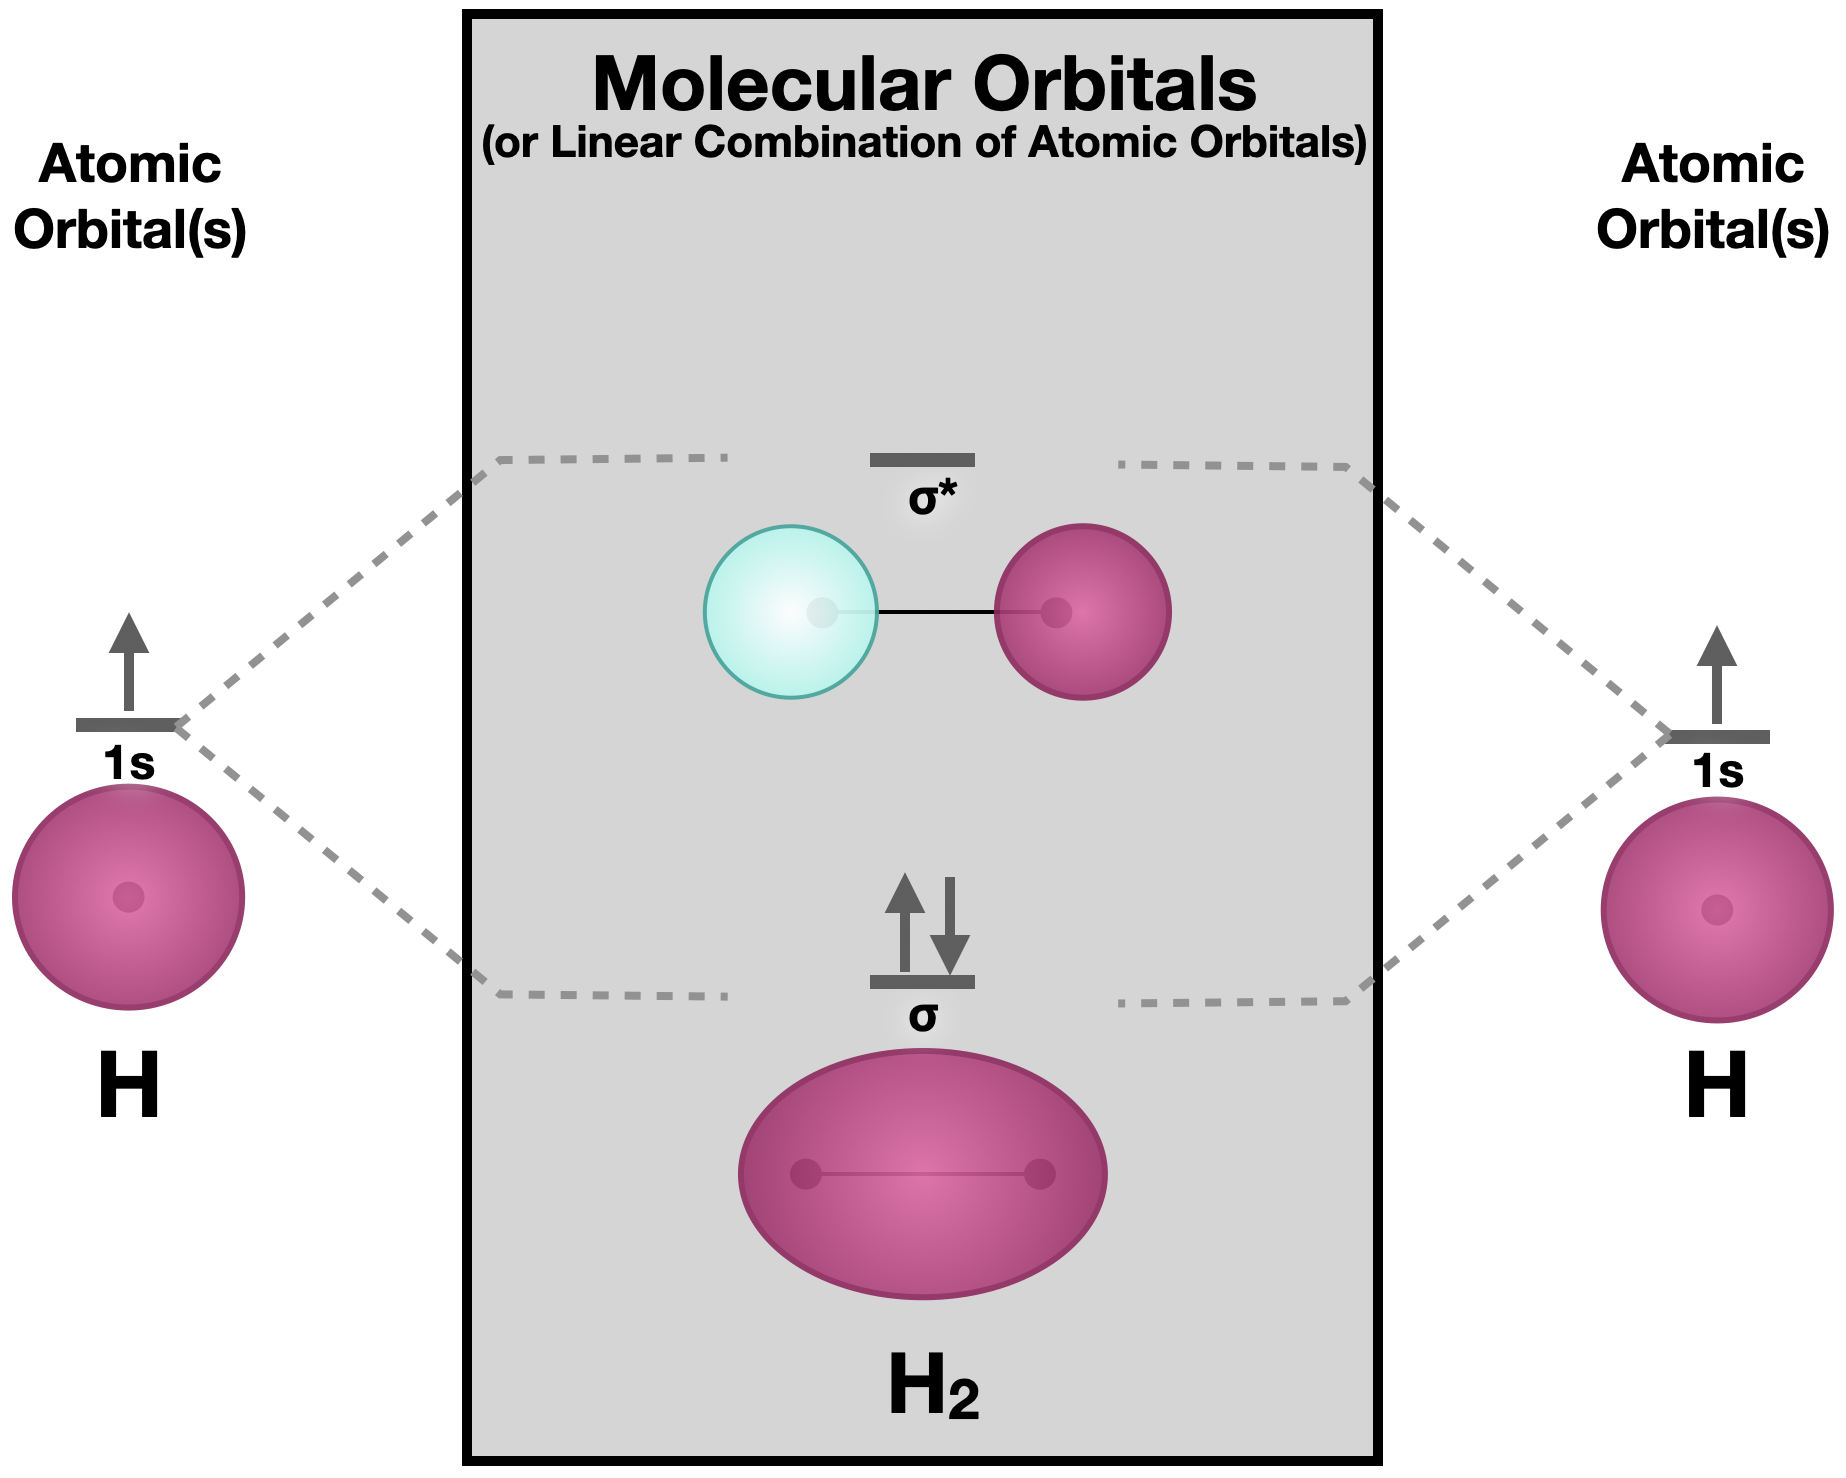 Diagrama orbital molecular de dihidrógeno. Dos orbitales atómicos 1s se combinan para dar dos orbitales moleculares con simetría sigma. El orbital de unión sigma de menor energía tiene ambos núcleos rodeados por densidad electrónica, mientras que el orbital de mayor energía posee dos lóbulos que están separados por un nodo.